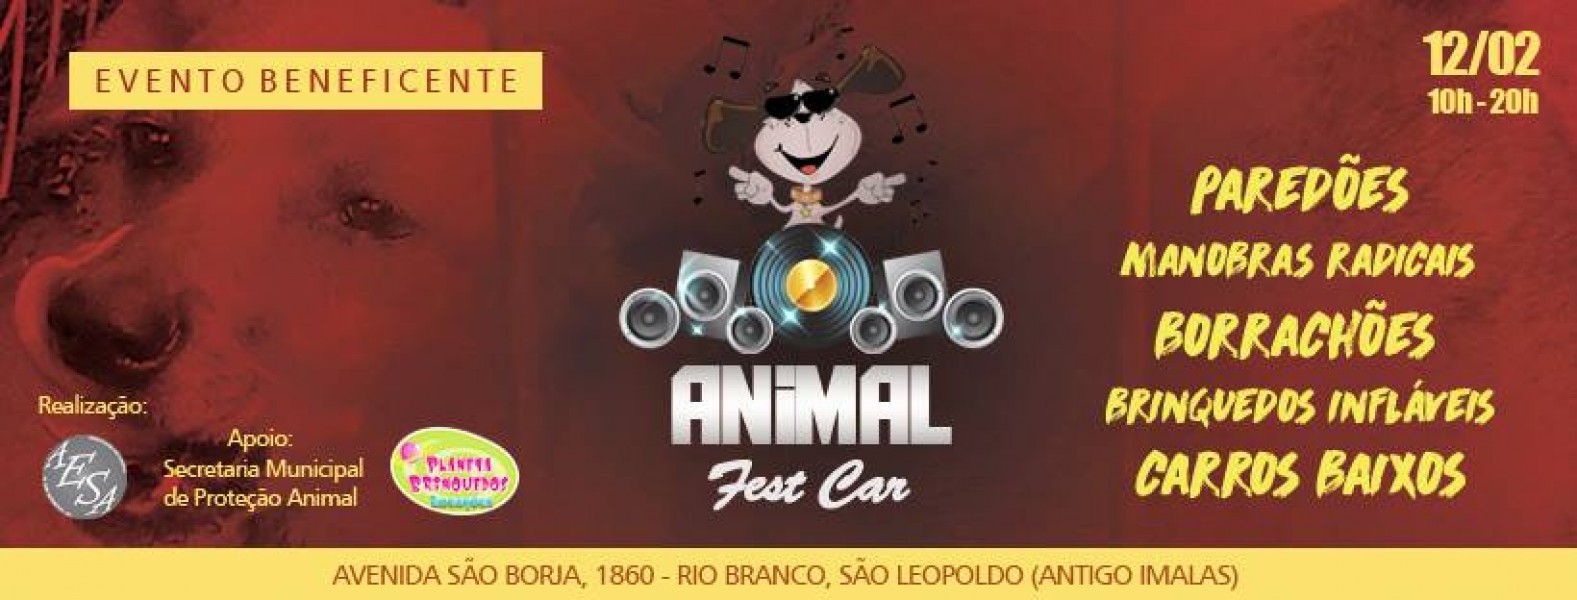 Domingo será dia de Animal Fest Car, no antigo Imalas, em São Leopoldo